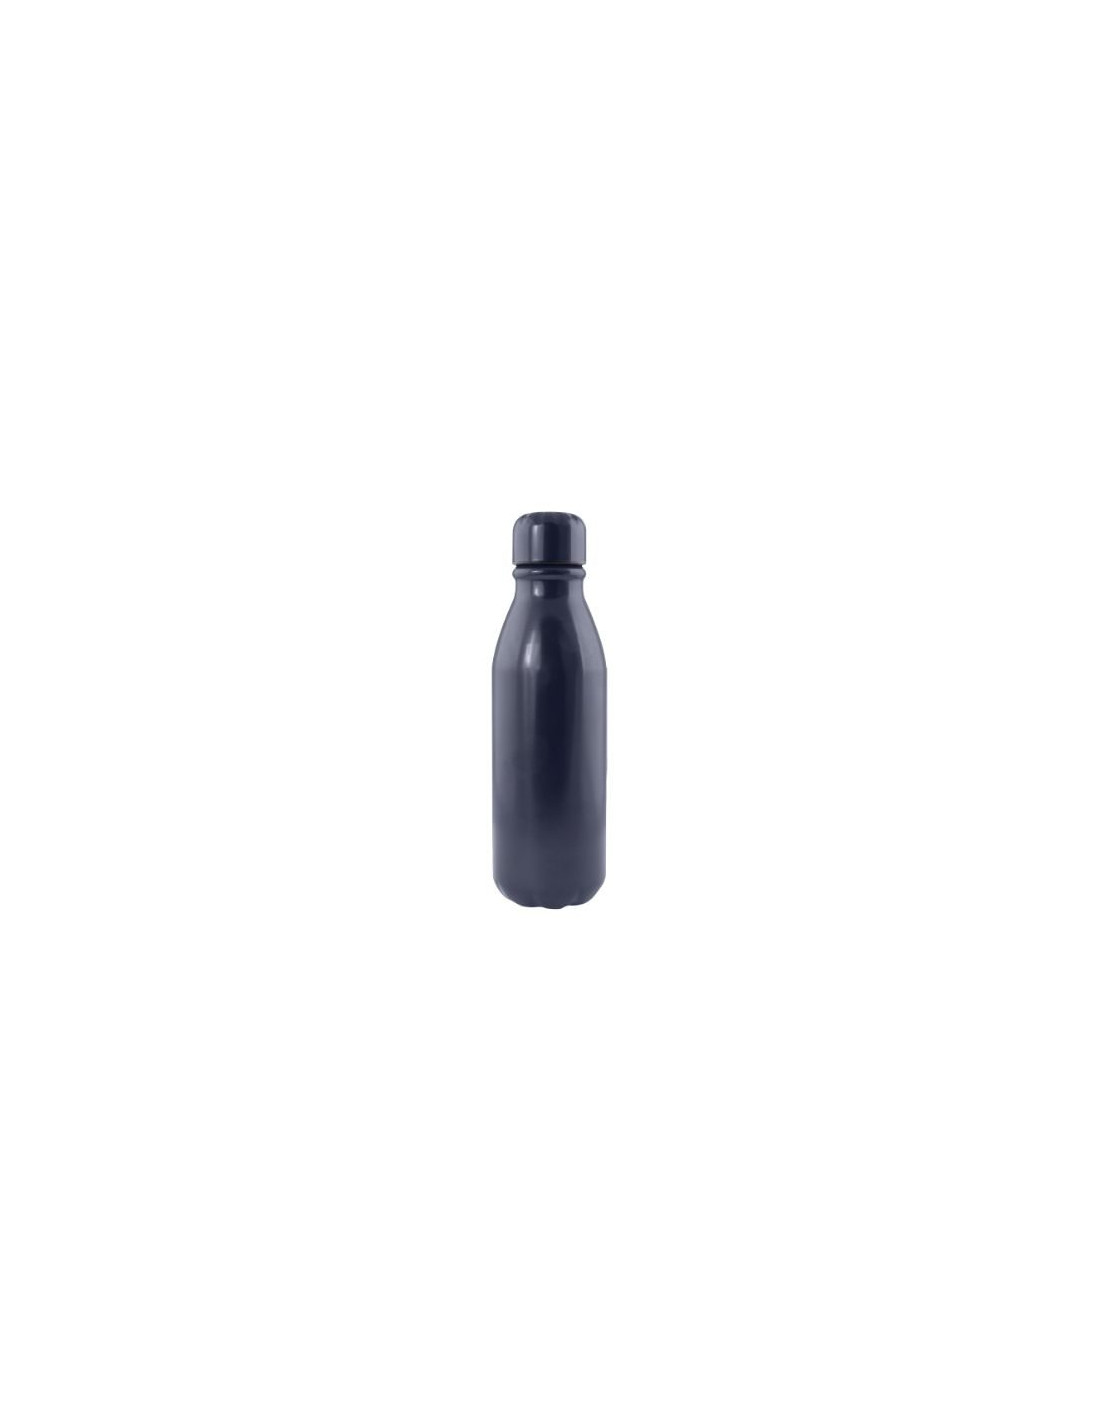 Botellas personalizadas – Botella de aluminio, otra alternativa para  olvidarnos del plástico. – Esta botella es cilíndrica, cierre a…